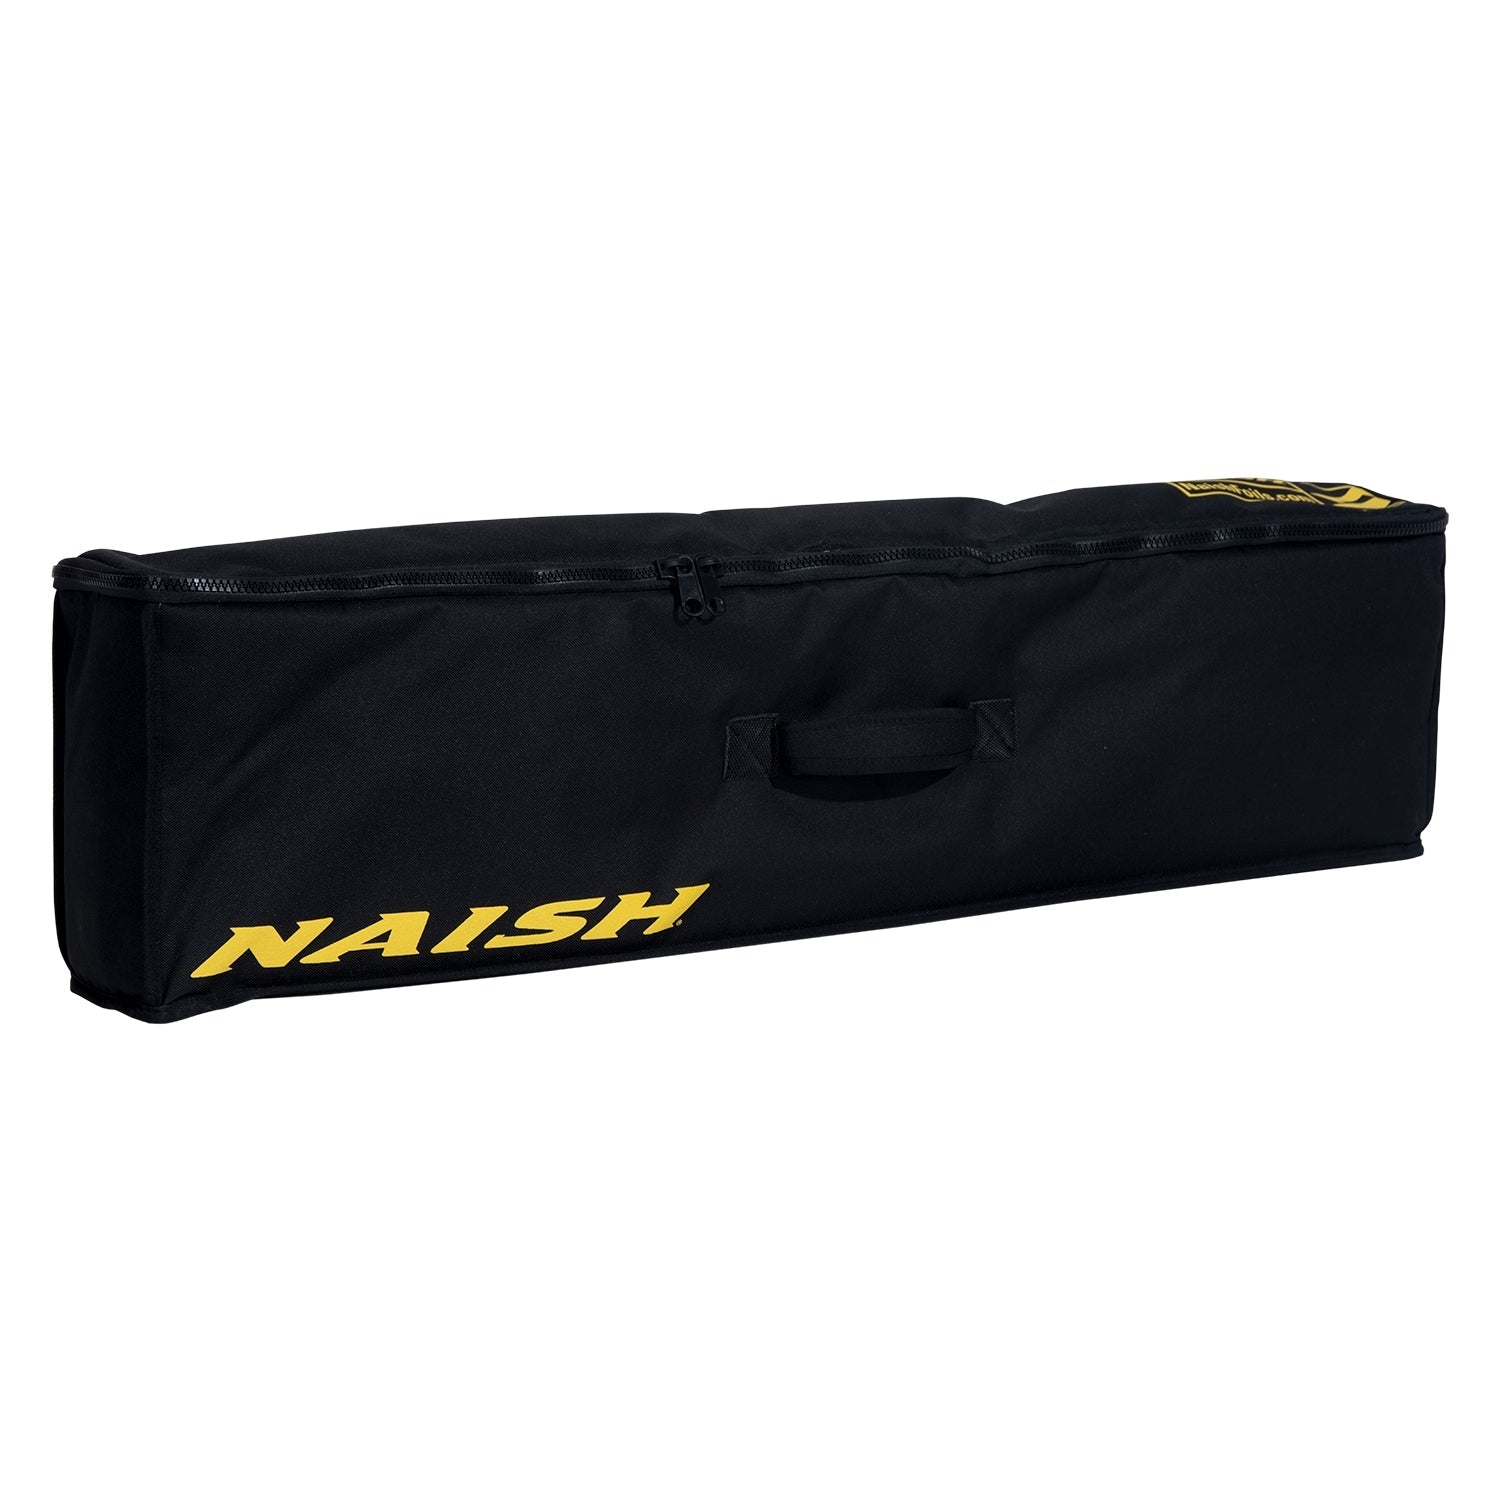 Naish Case Foil Jet 1150/1250